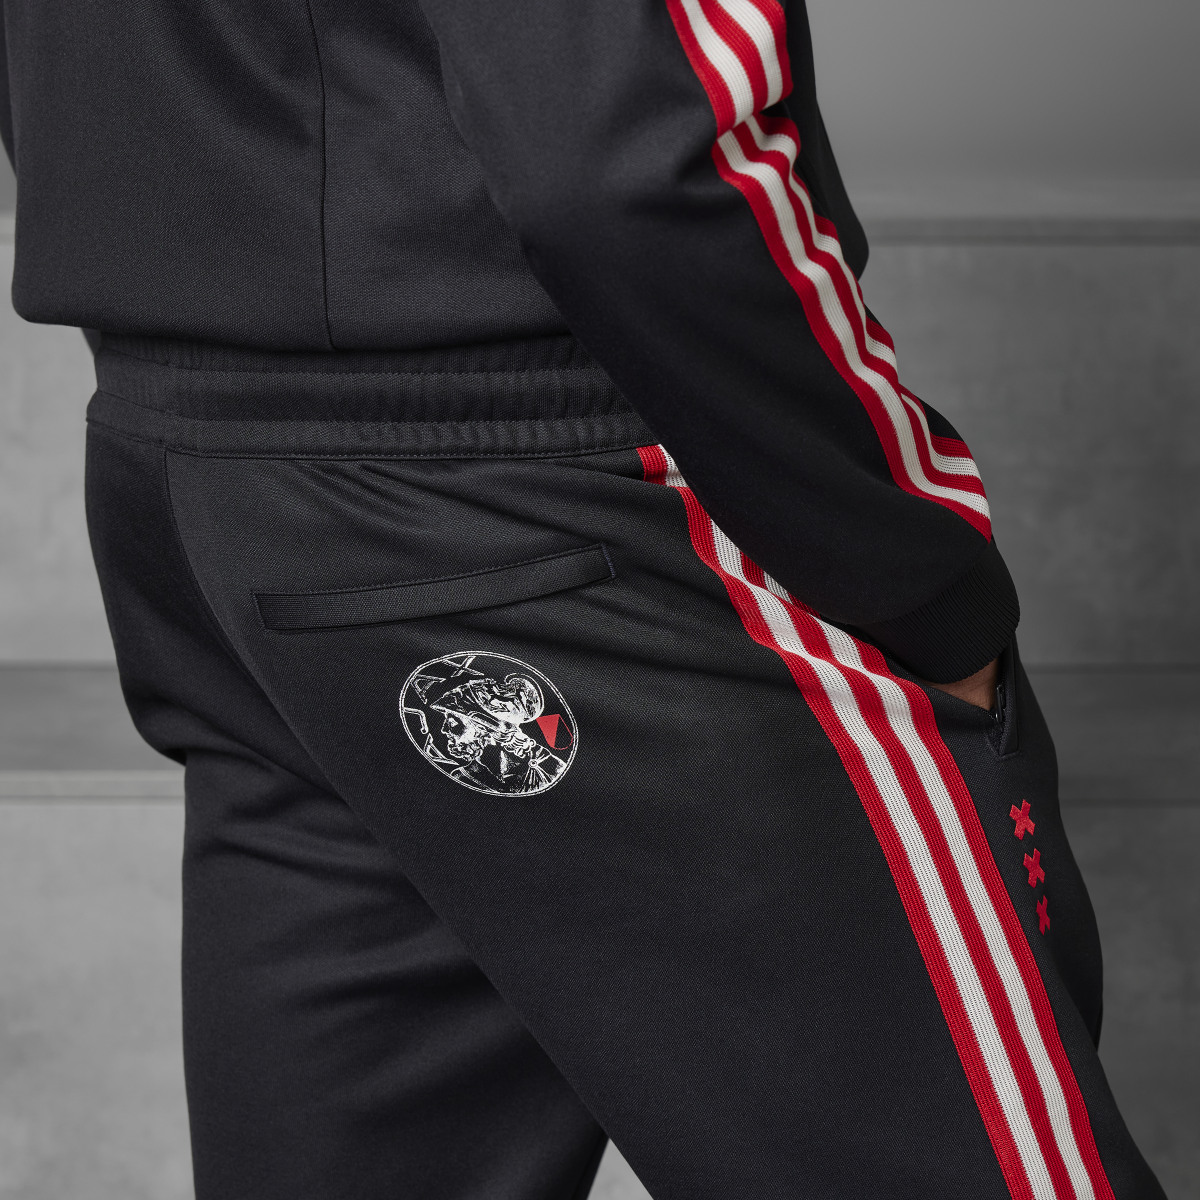 Adidas Ajax Amsterdam OG Track Pants. 8